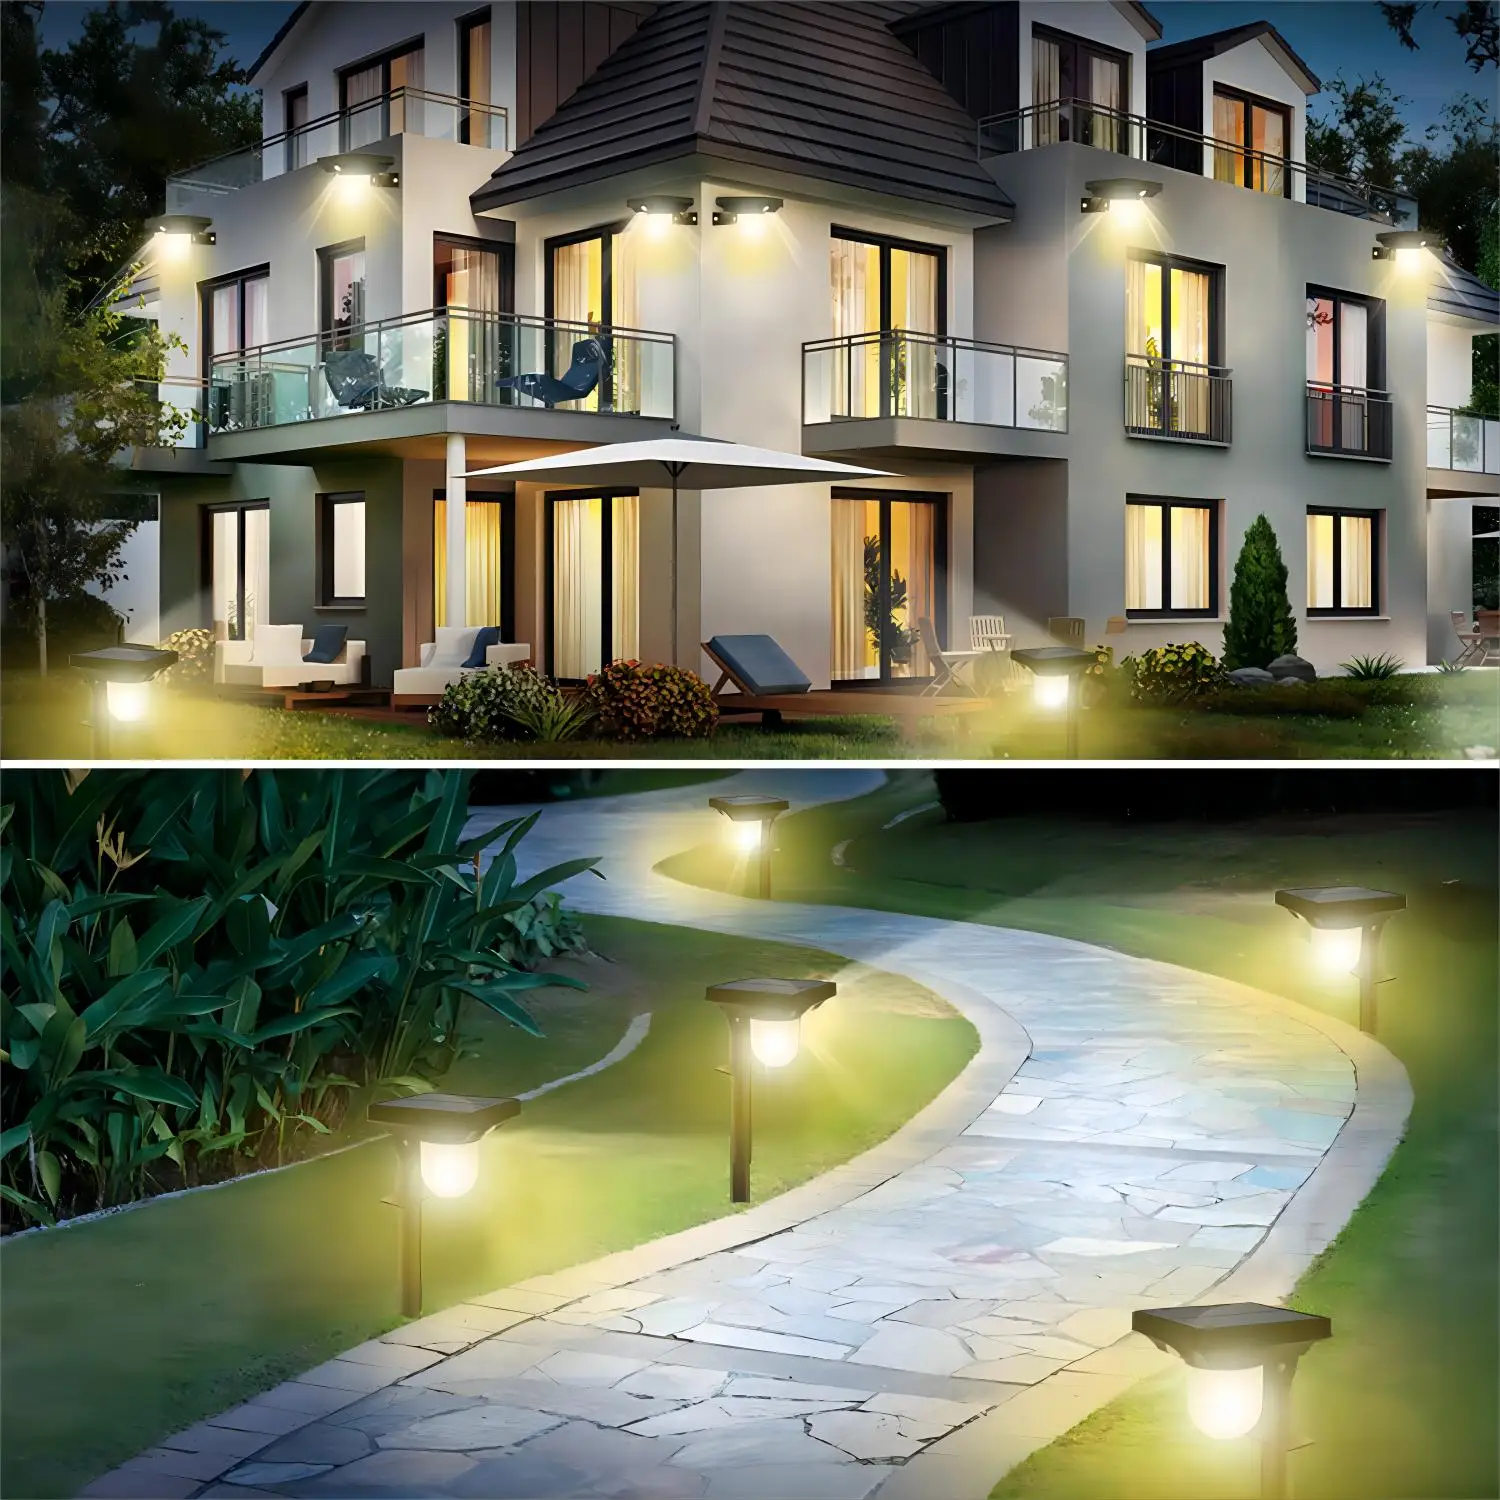 Foco de luz LED Solar para jardín, lámpara de pared impermeable con 3 modos de inducción del cuerpo humano, ideal para exteriores, iluminación de caminos y paisajes